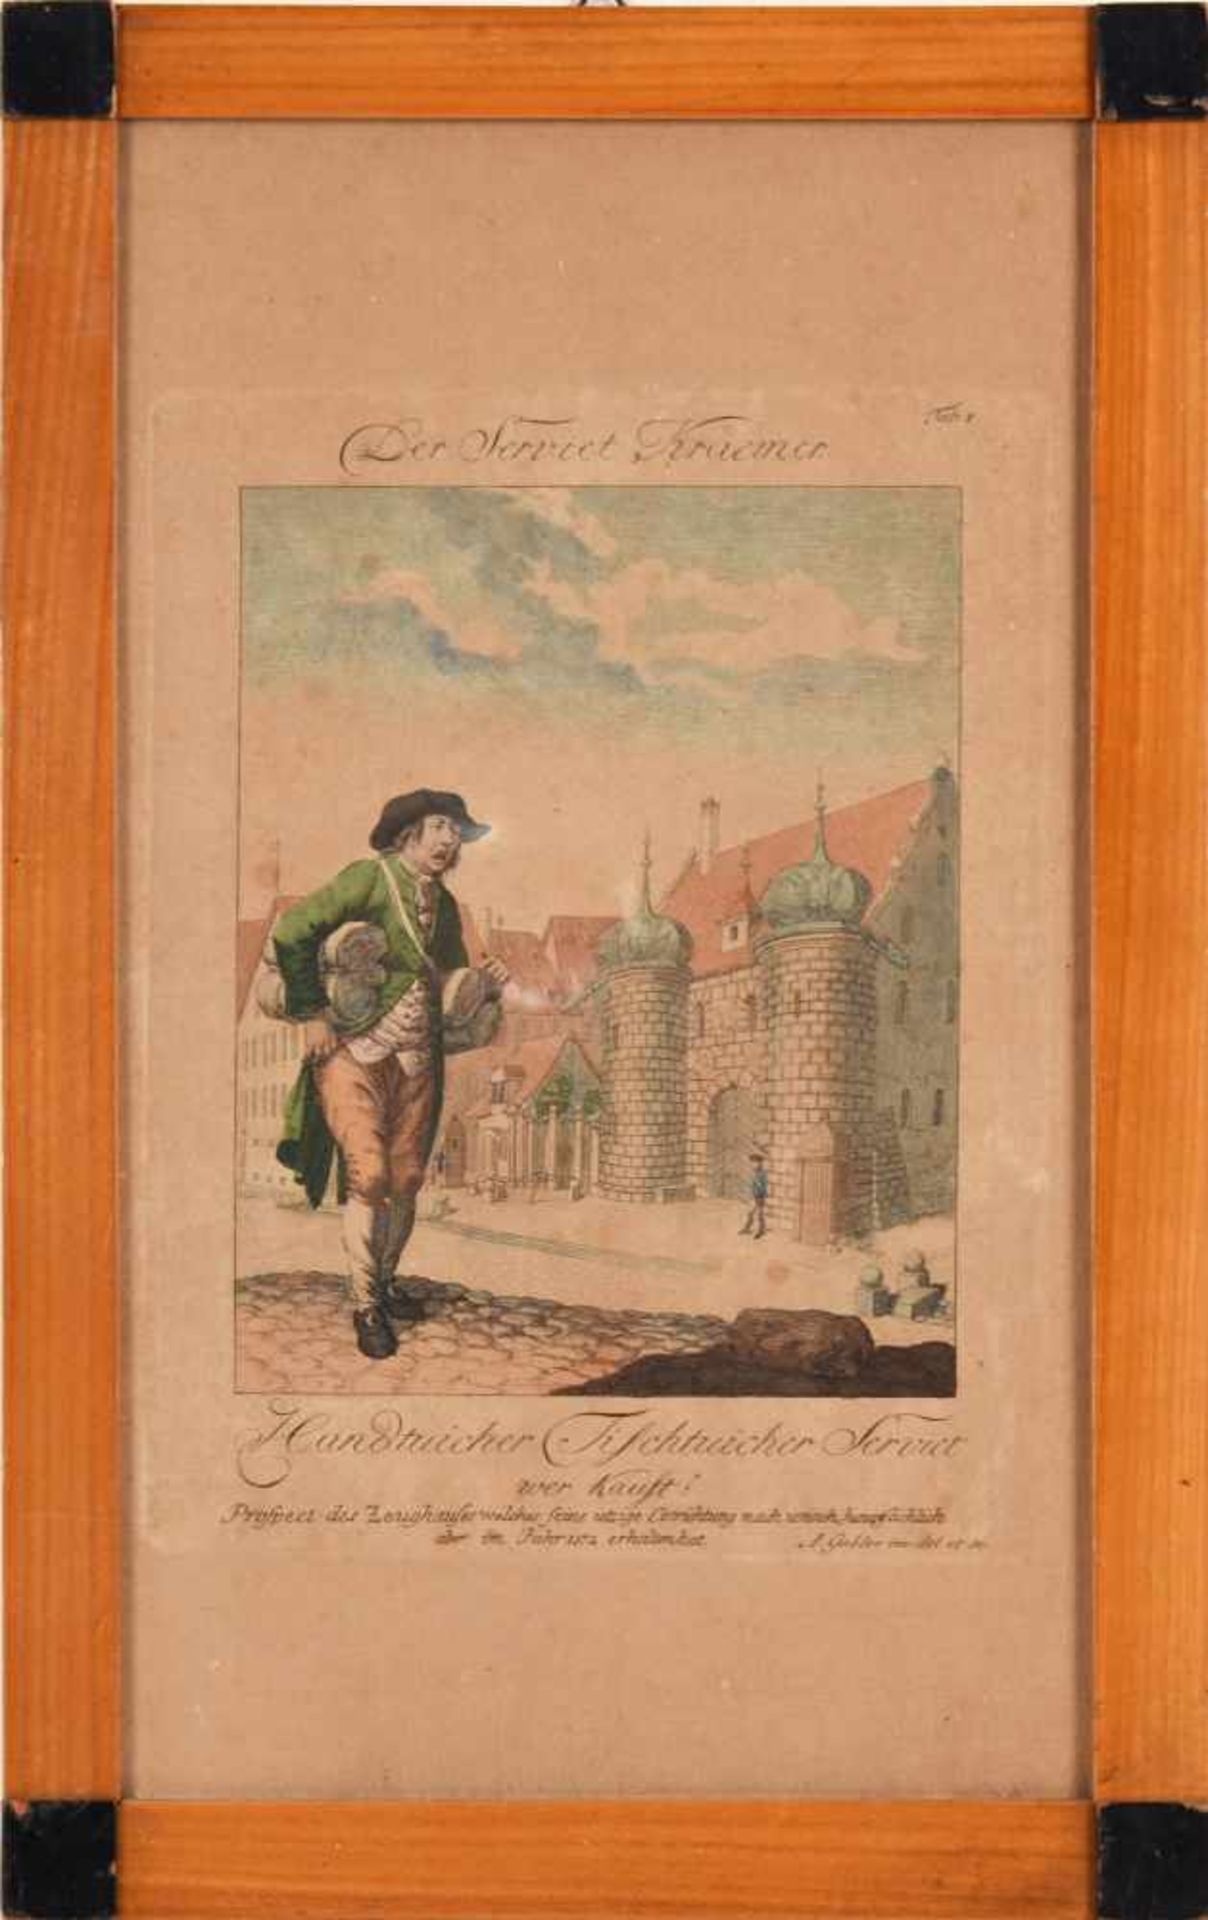 Gabler, Ambrosius (1762 Nürnberg - 1834 ebd.) kolorierte Radierung, "Der Serviet Kraemer", Blatt 1 - Bild 3 aus 3